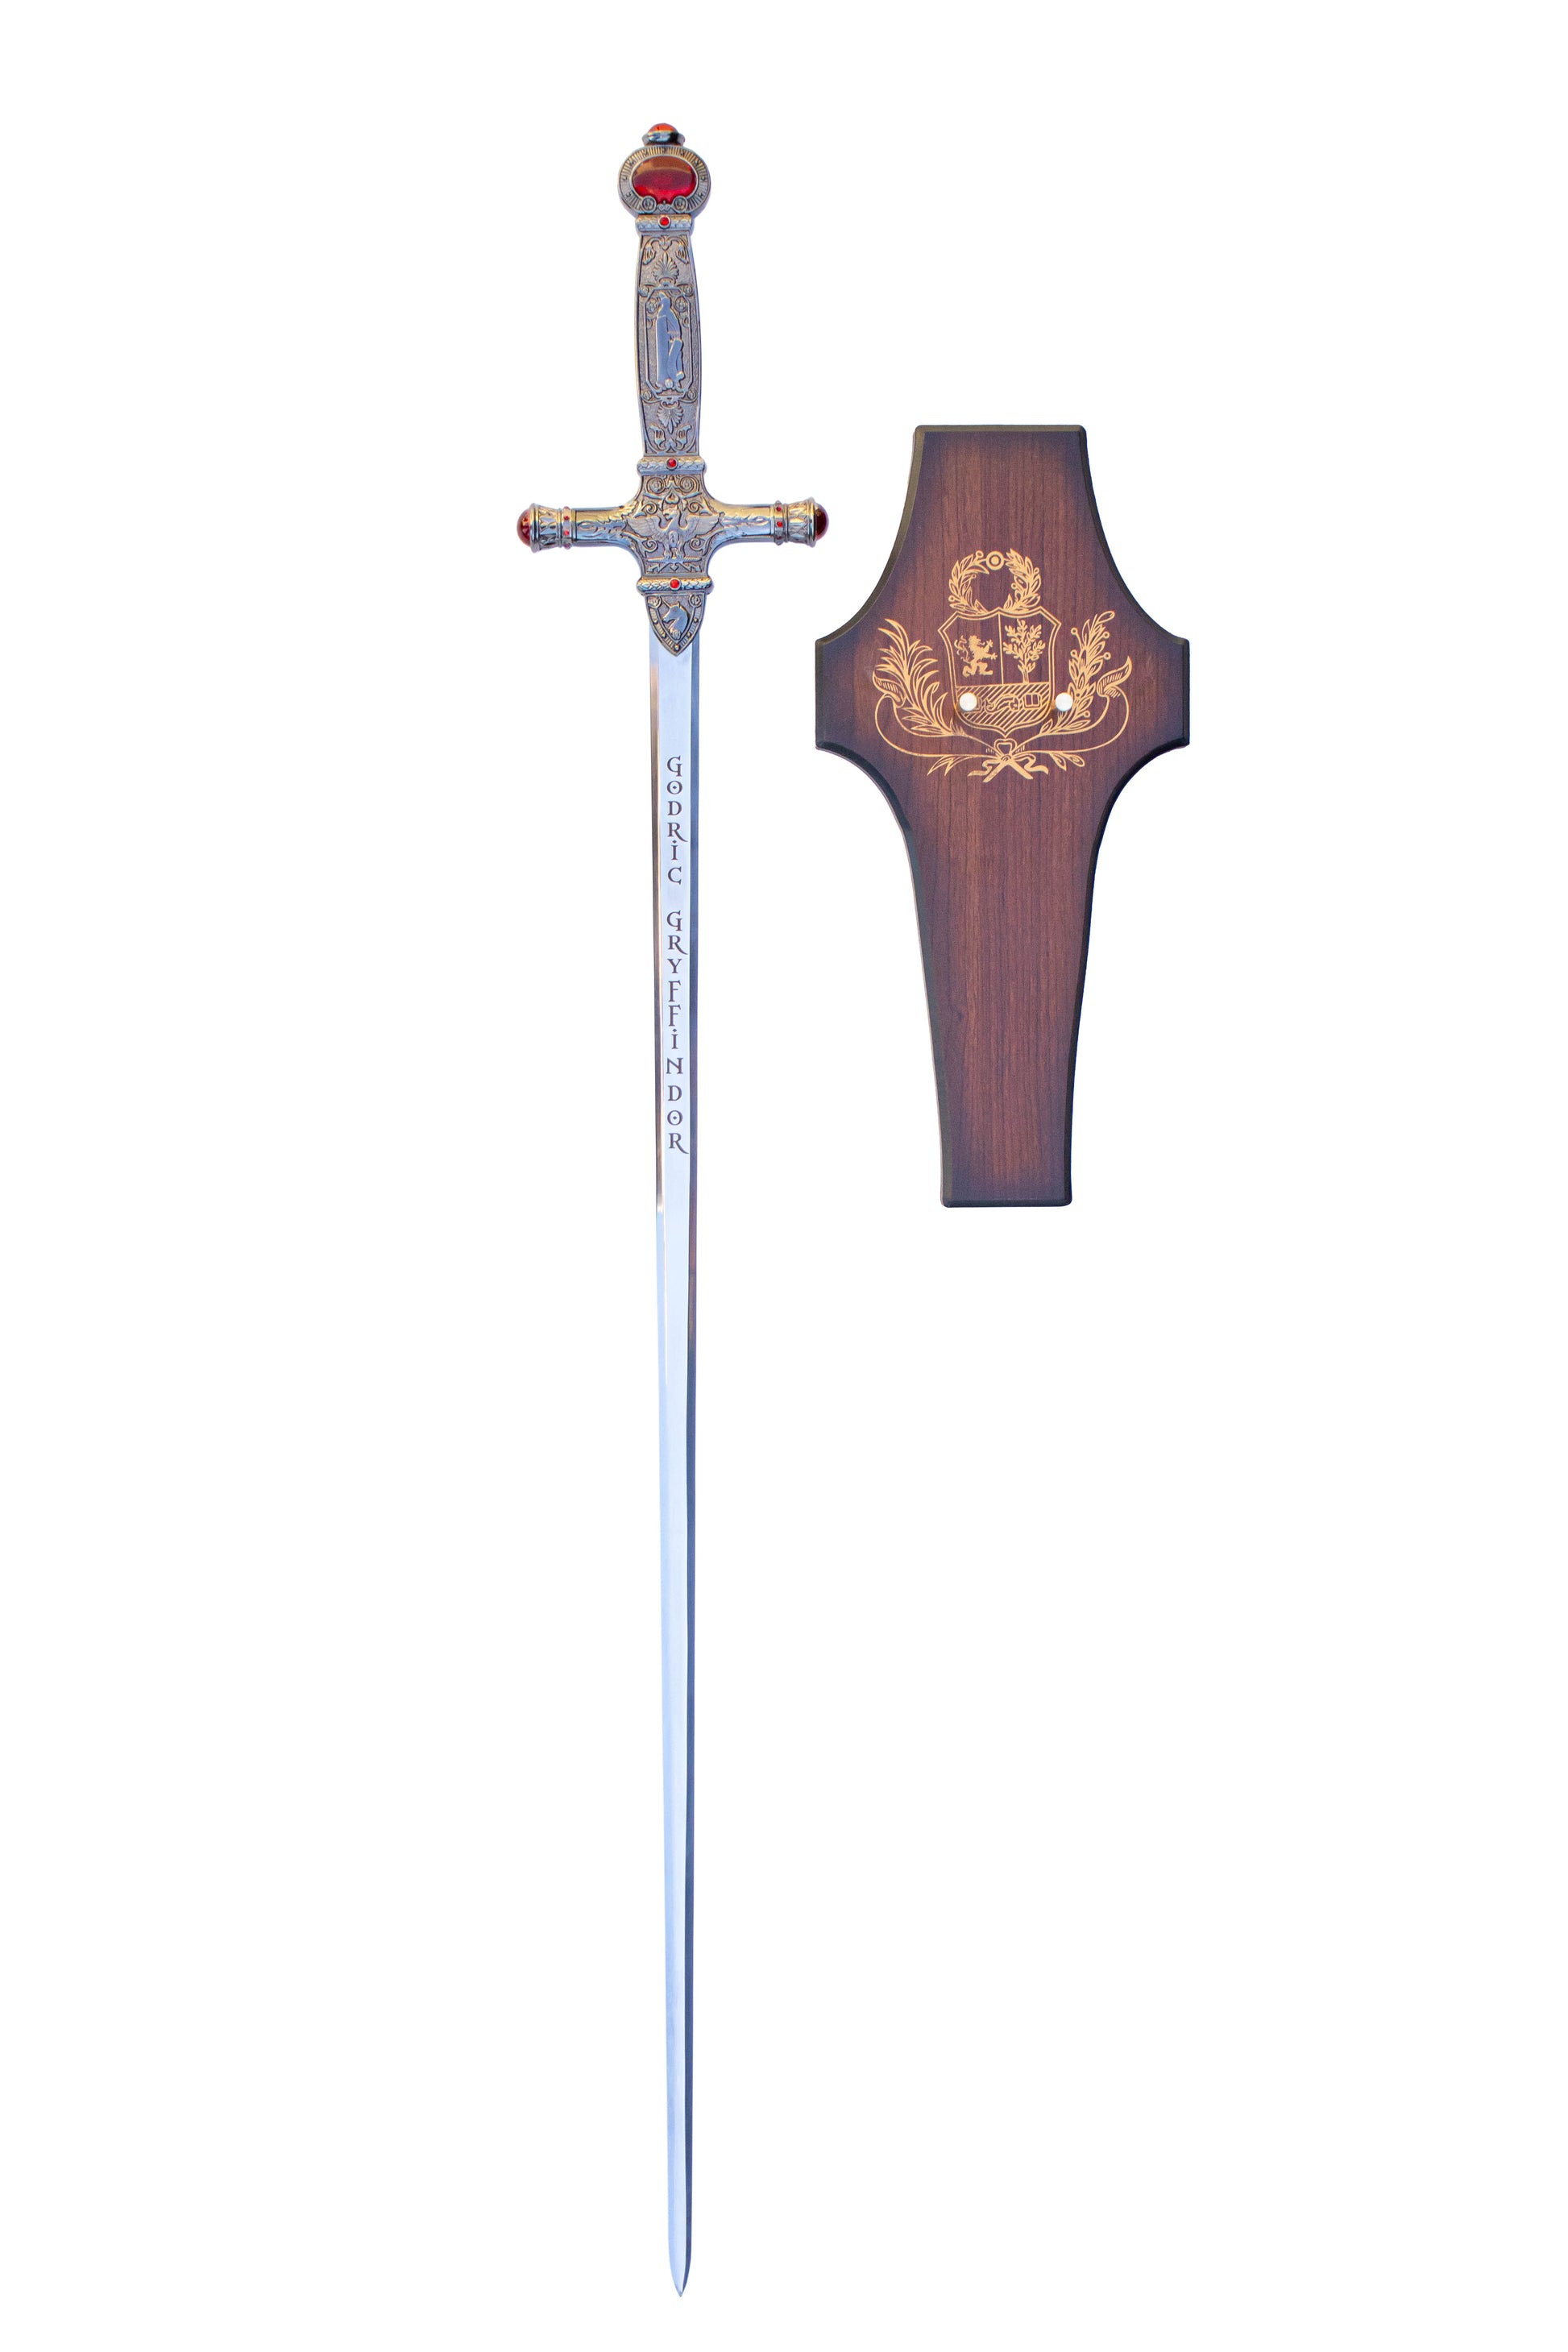 sword of gryffindor